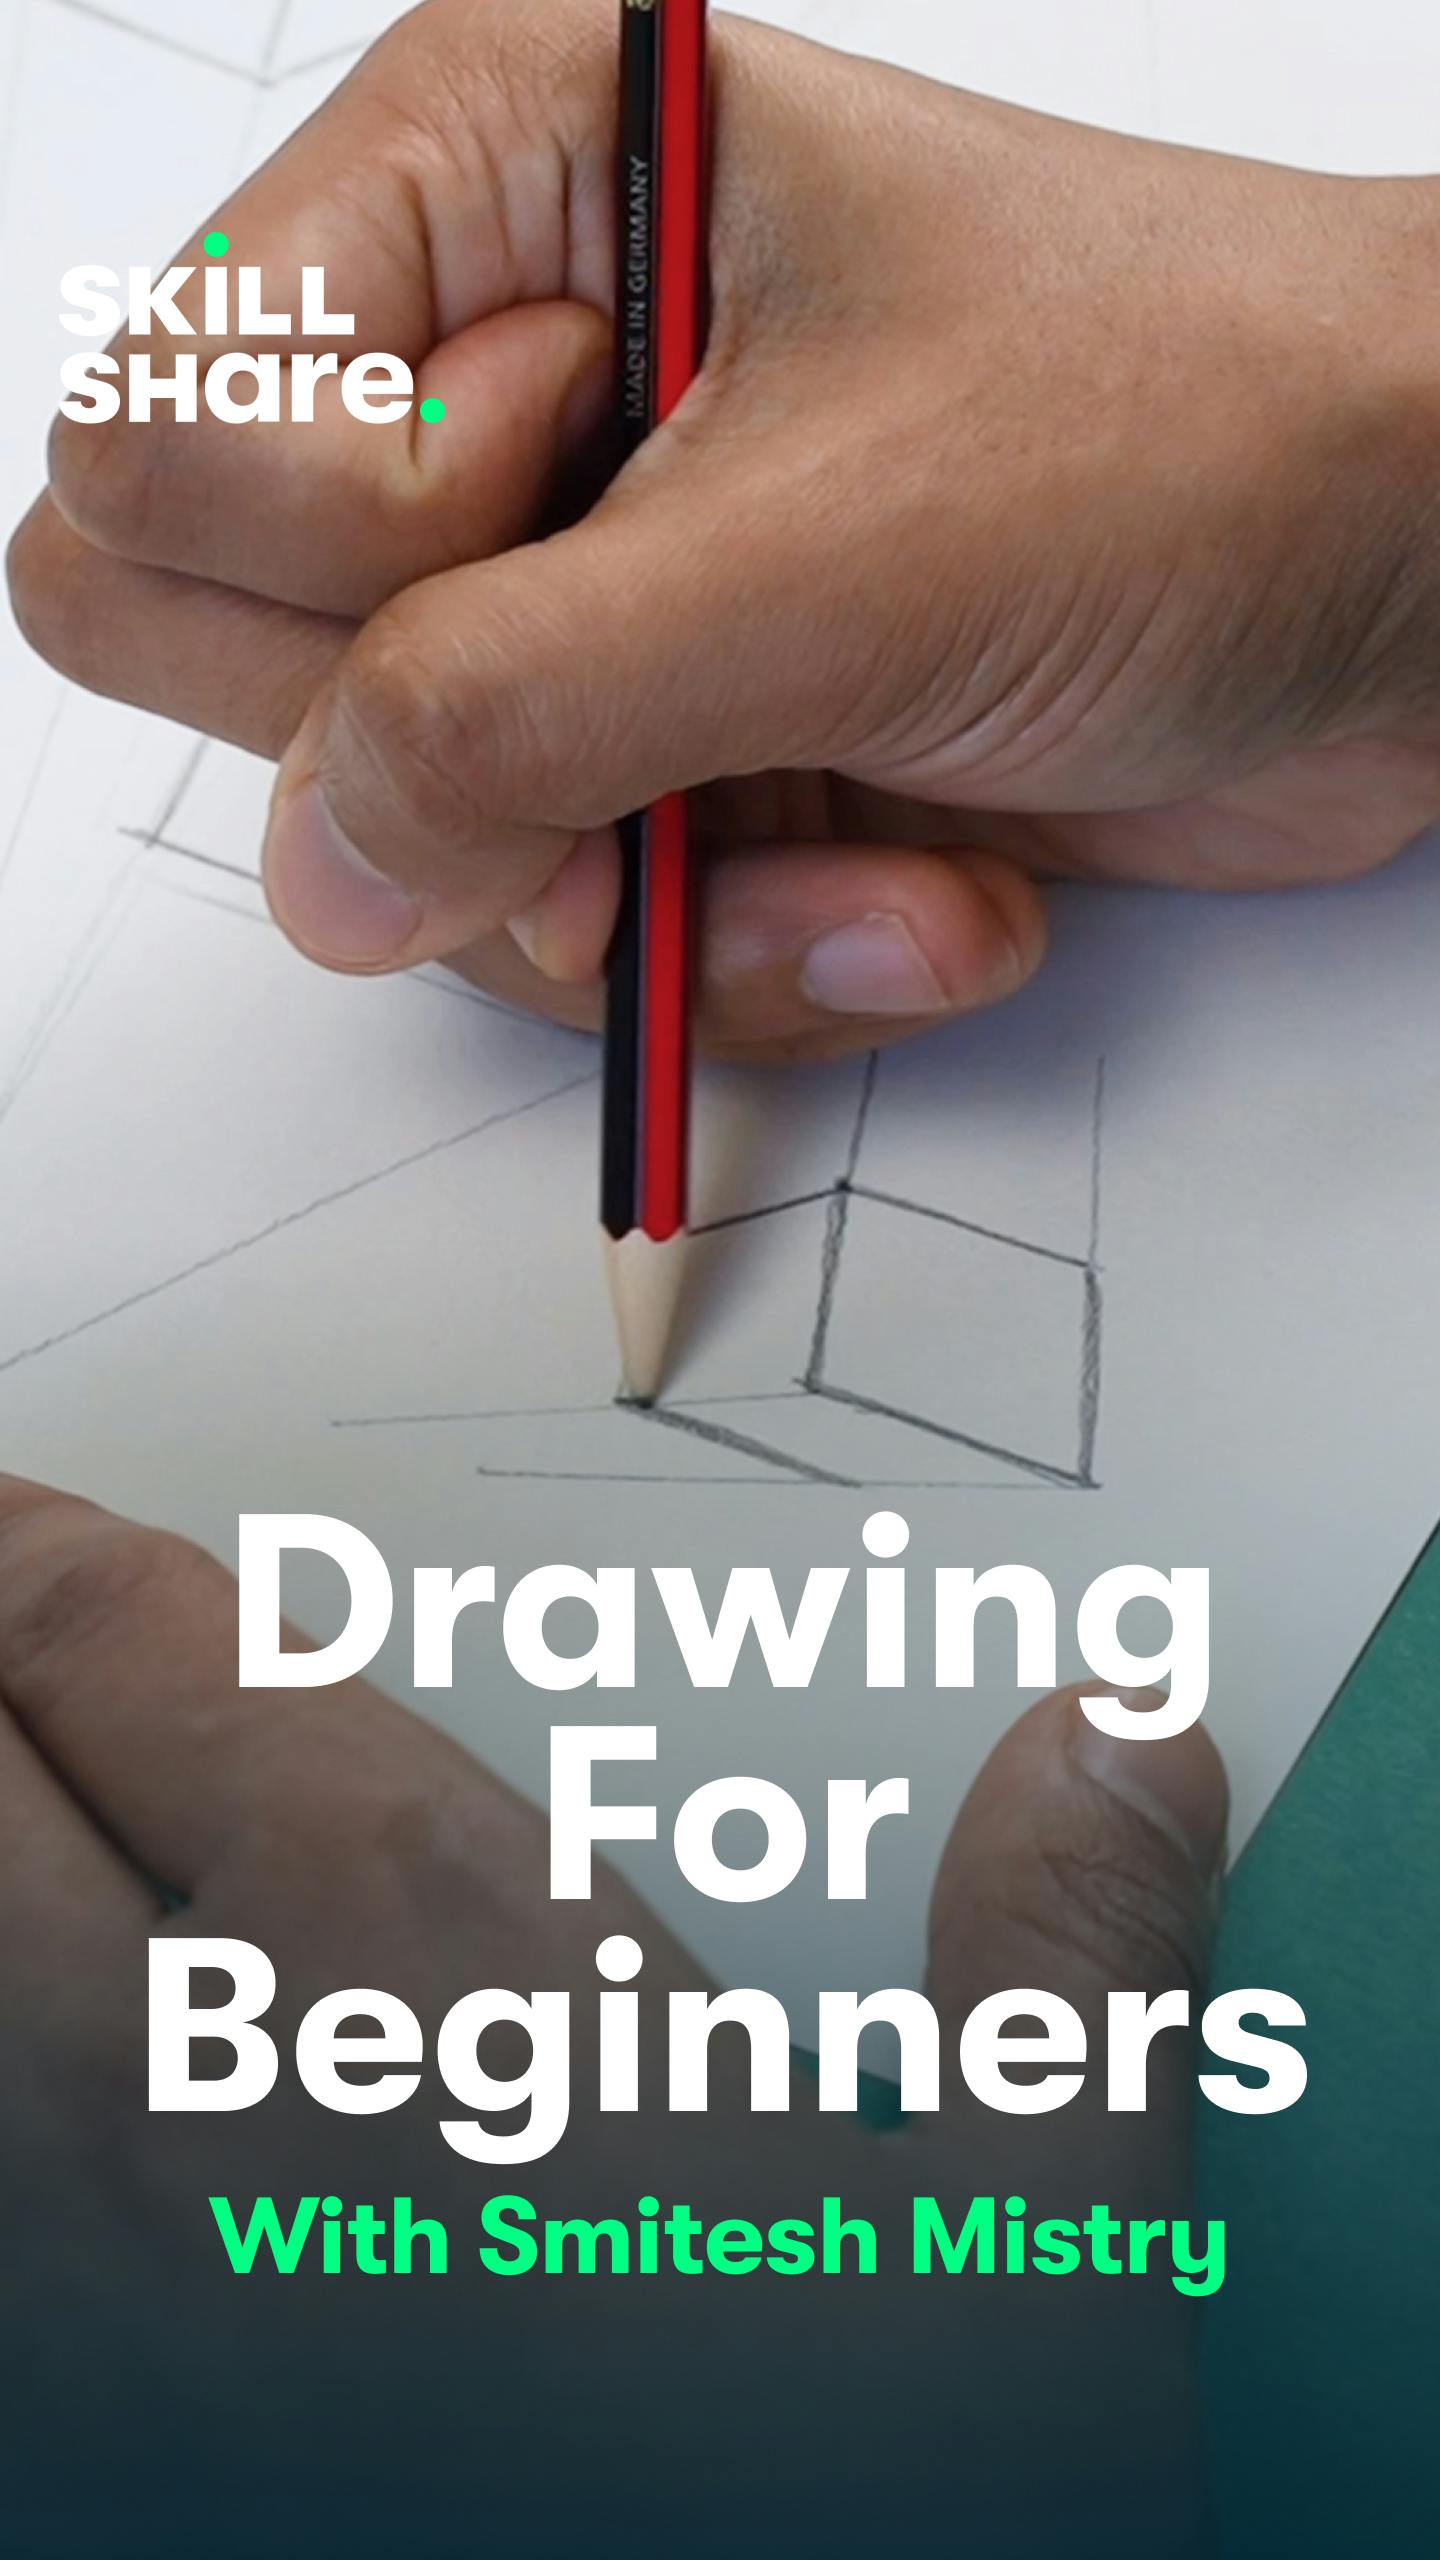 Skillshare: Drawing for Beginners